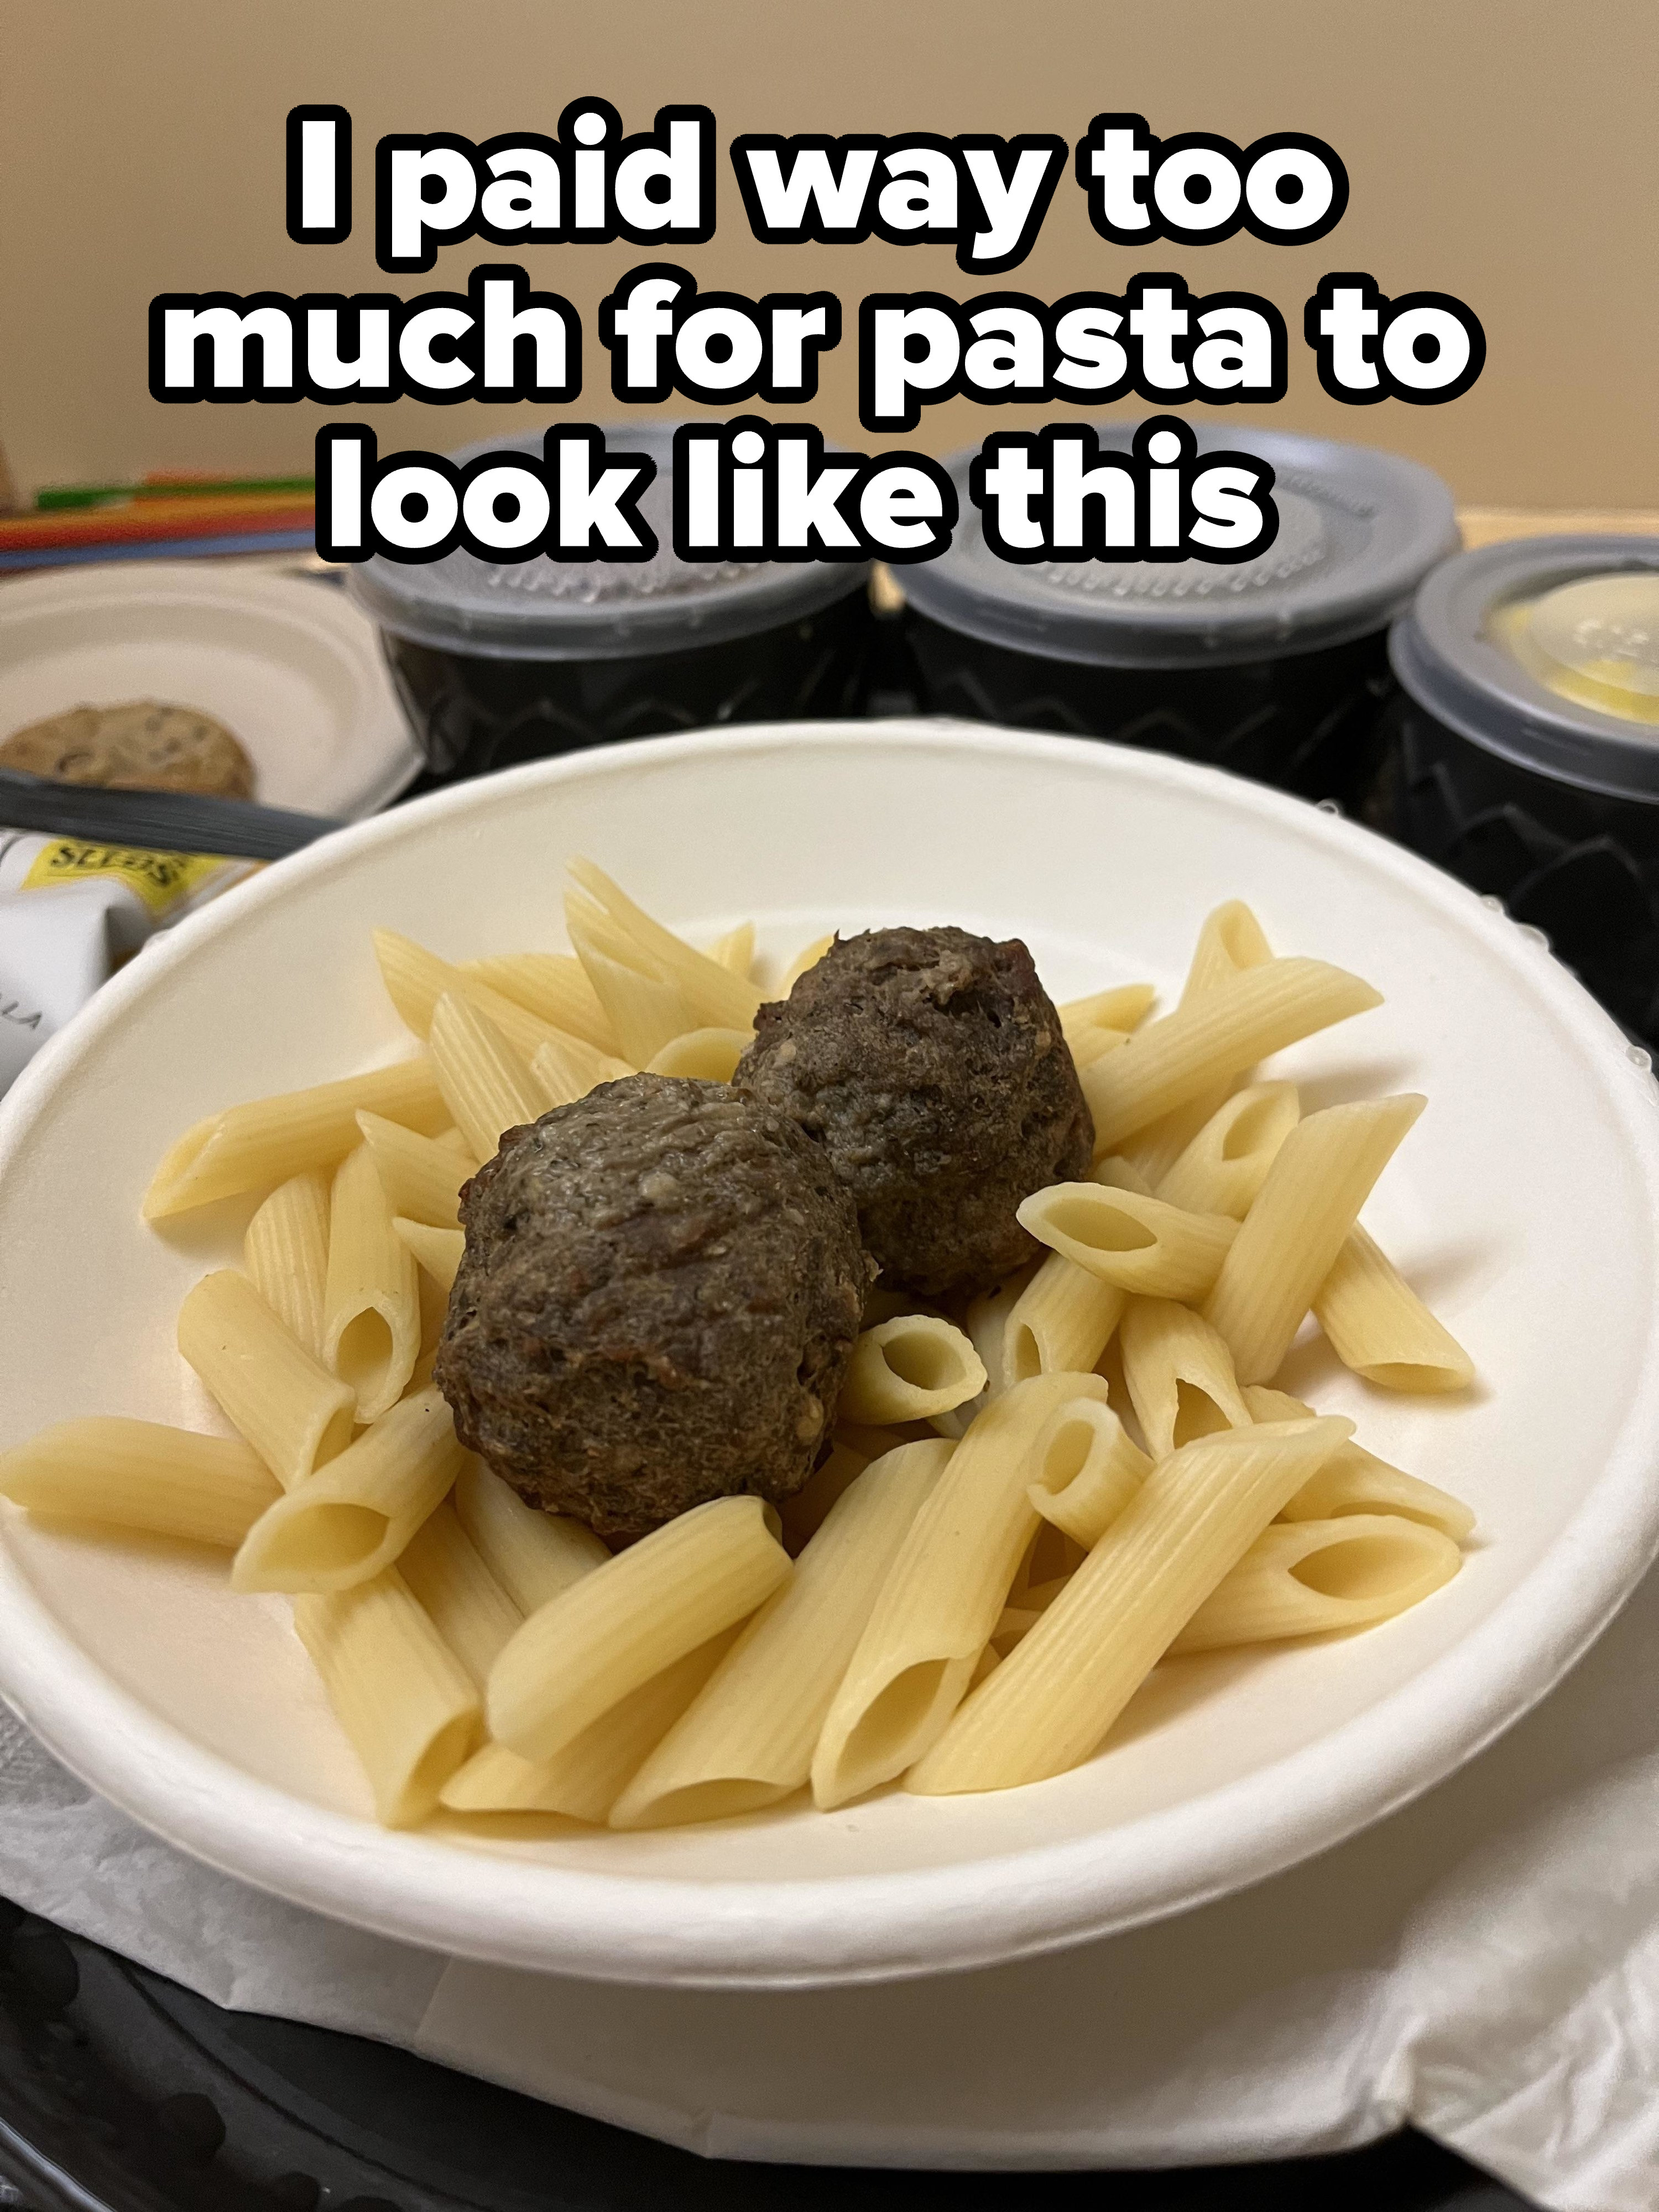 Dry pasta